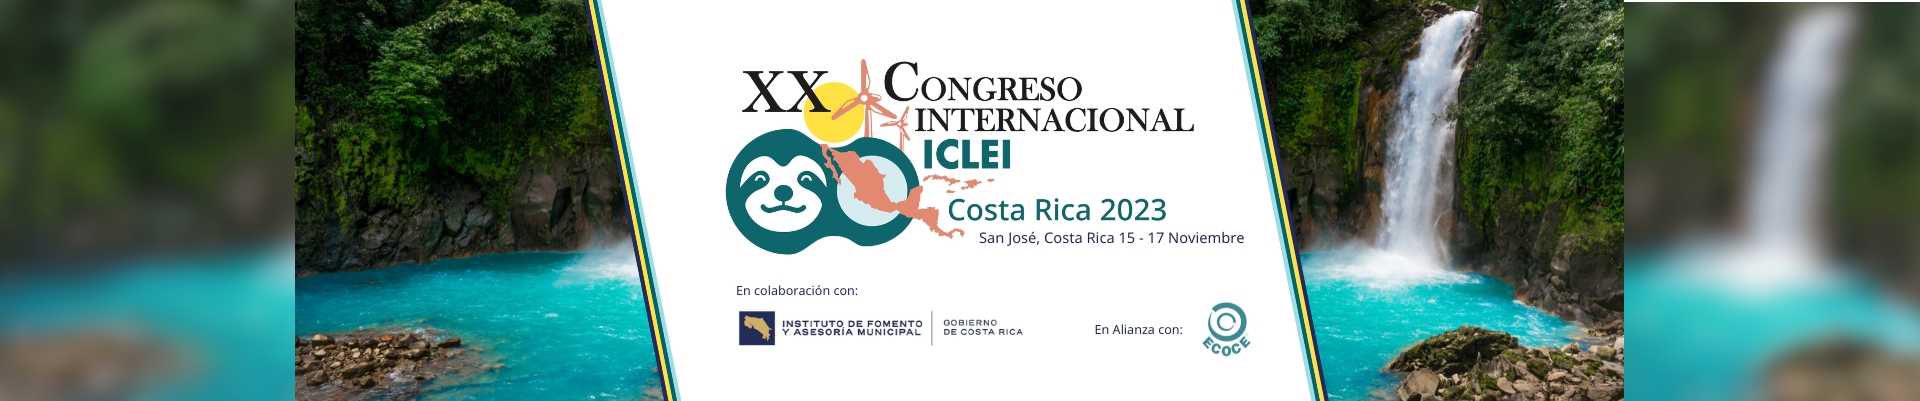 XX Congreso Internacional ICLEI - Costa Rica 2023